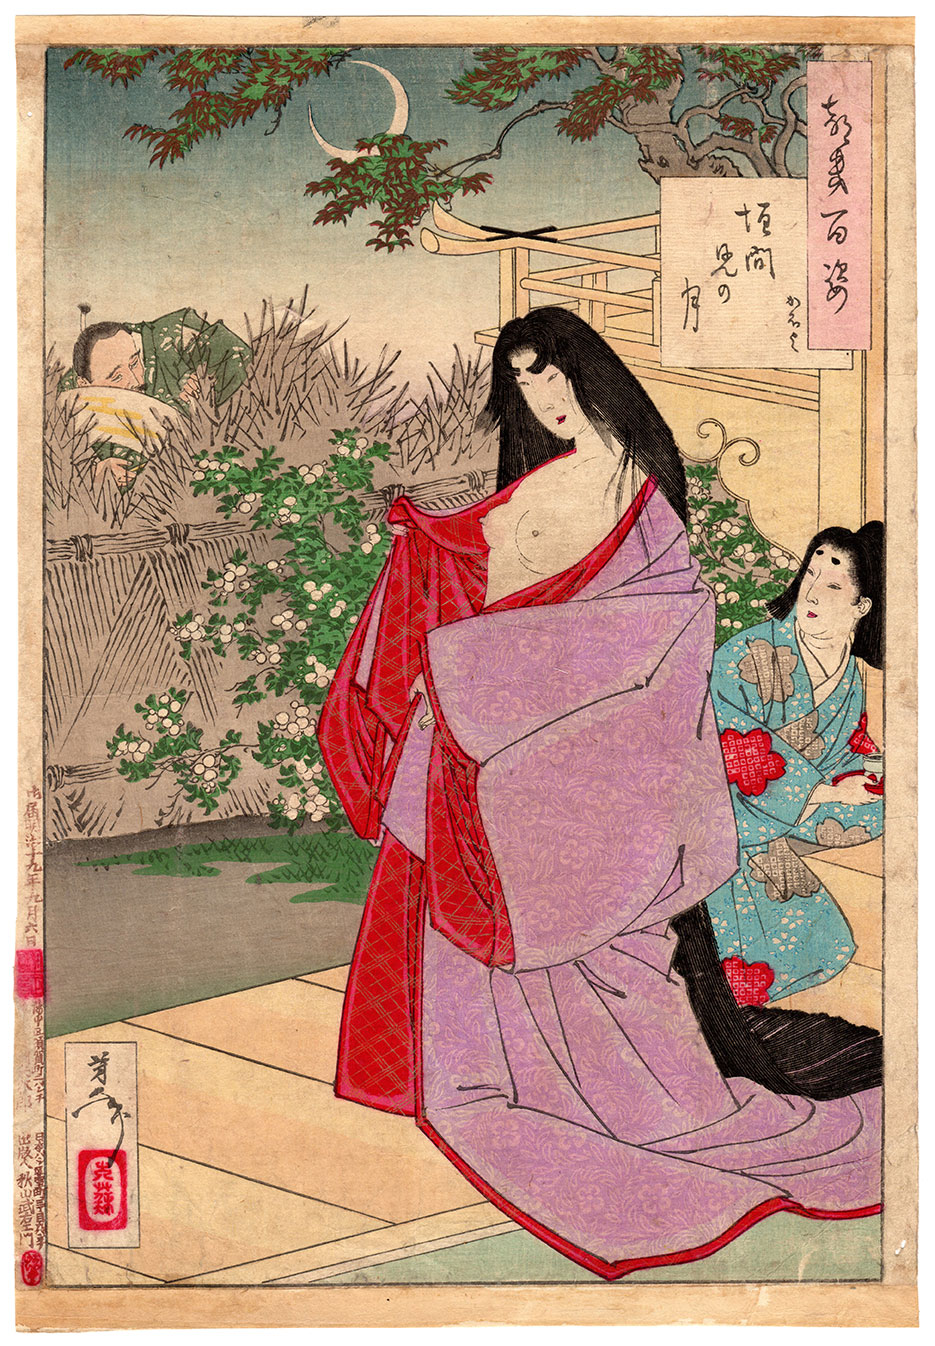 明月一瞥 by  月冈芳年 - 1886年 - 24 x 34,5 厘米 